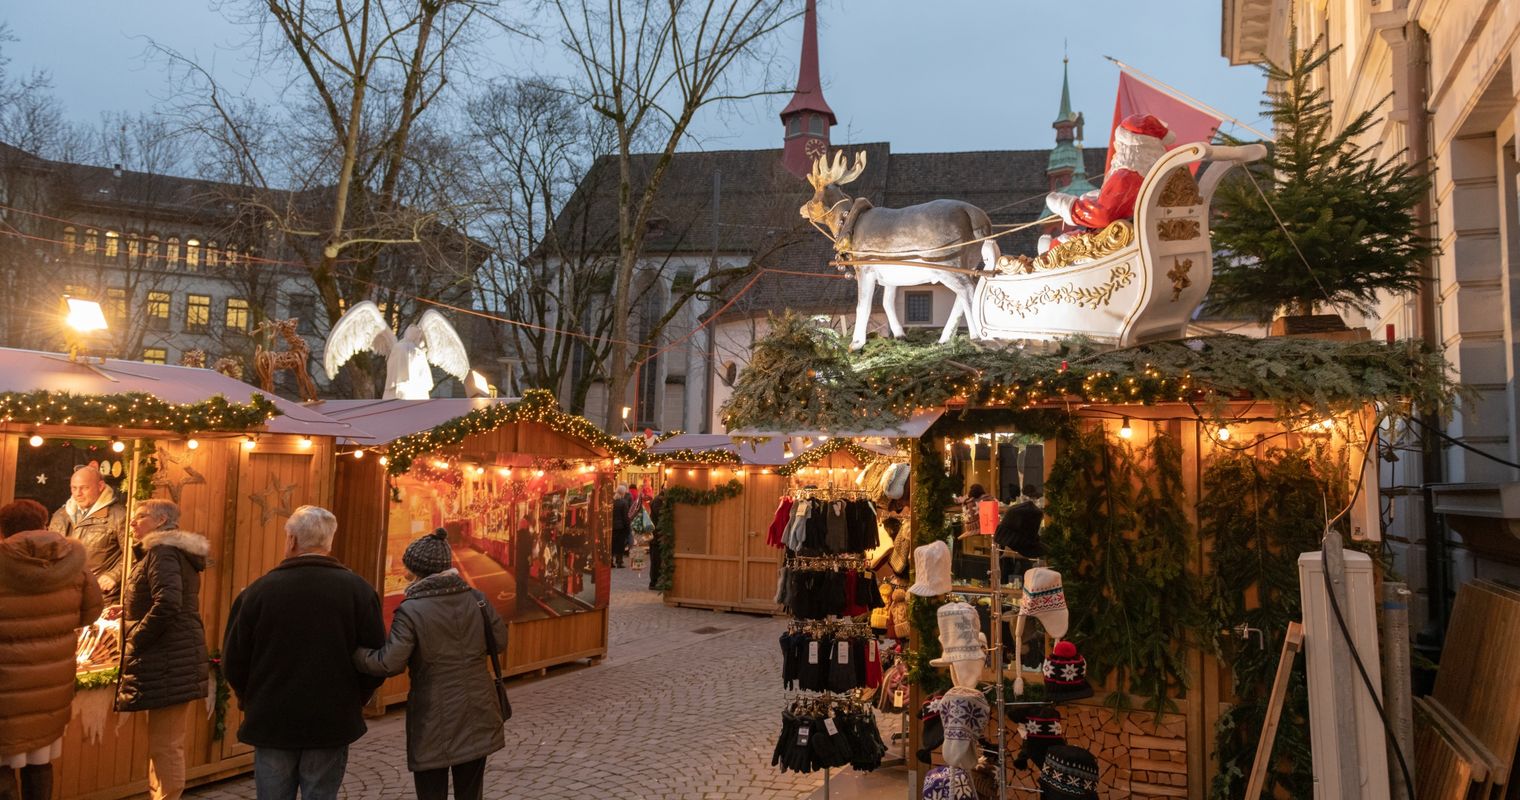 Kalt und dunkel: Luzerner Weihnachtsmärkte ziehen Bilanz